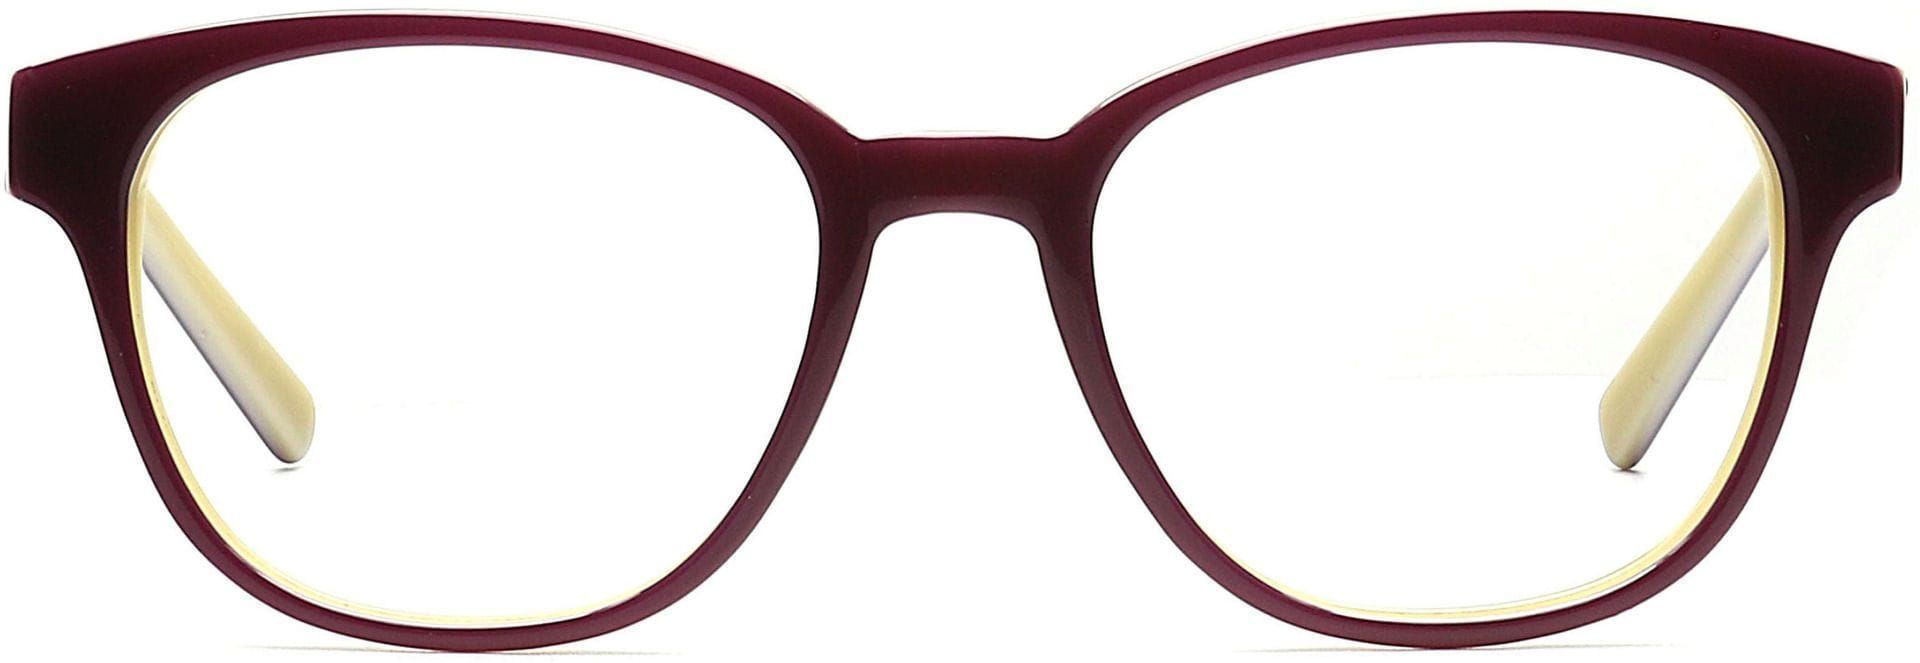 Pinnacle Classic Square Progressive Glasses - Brown